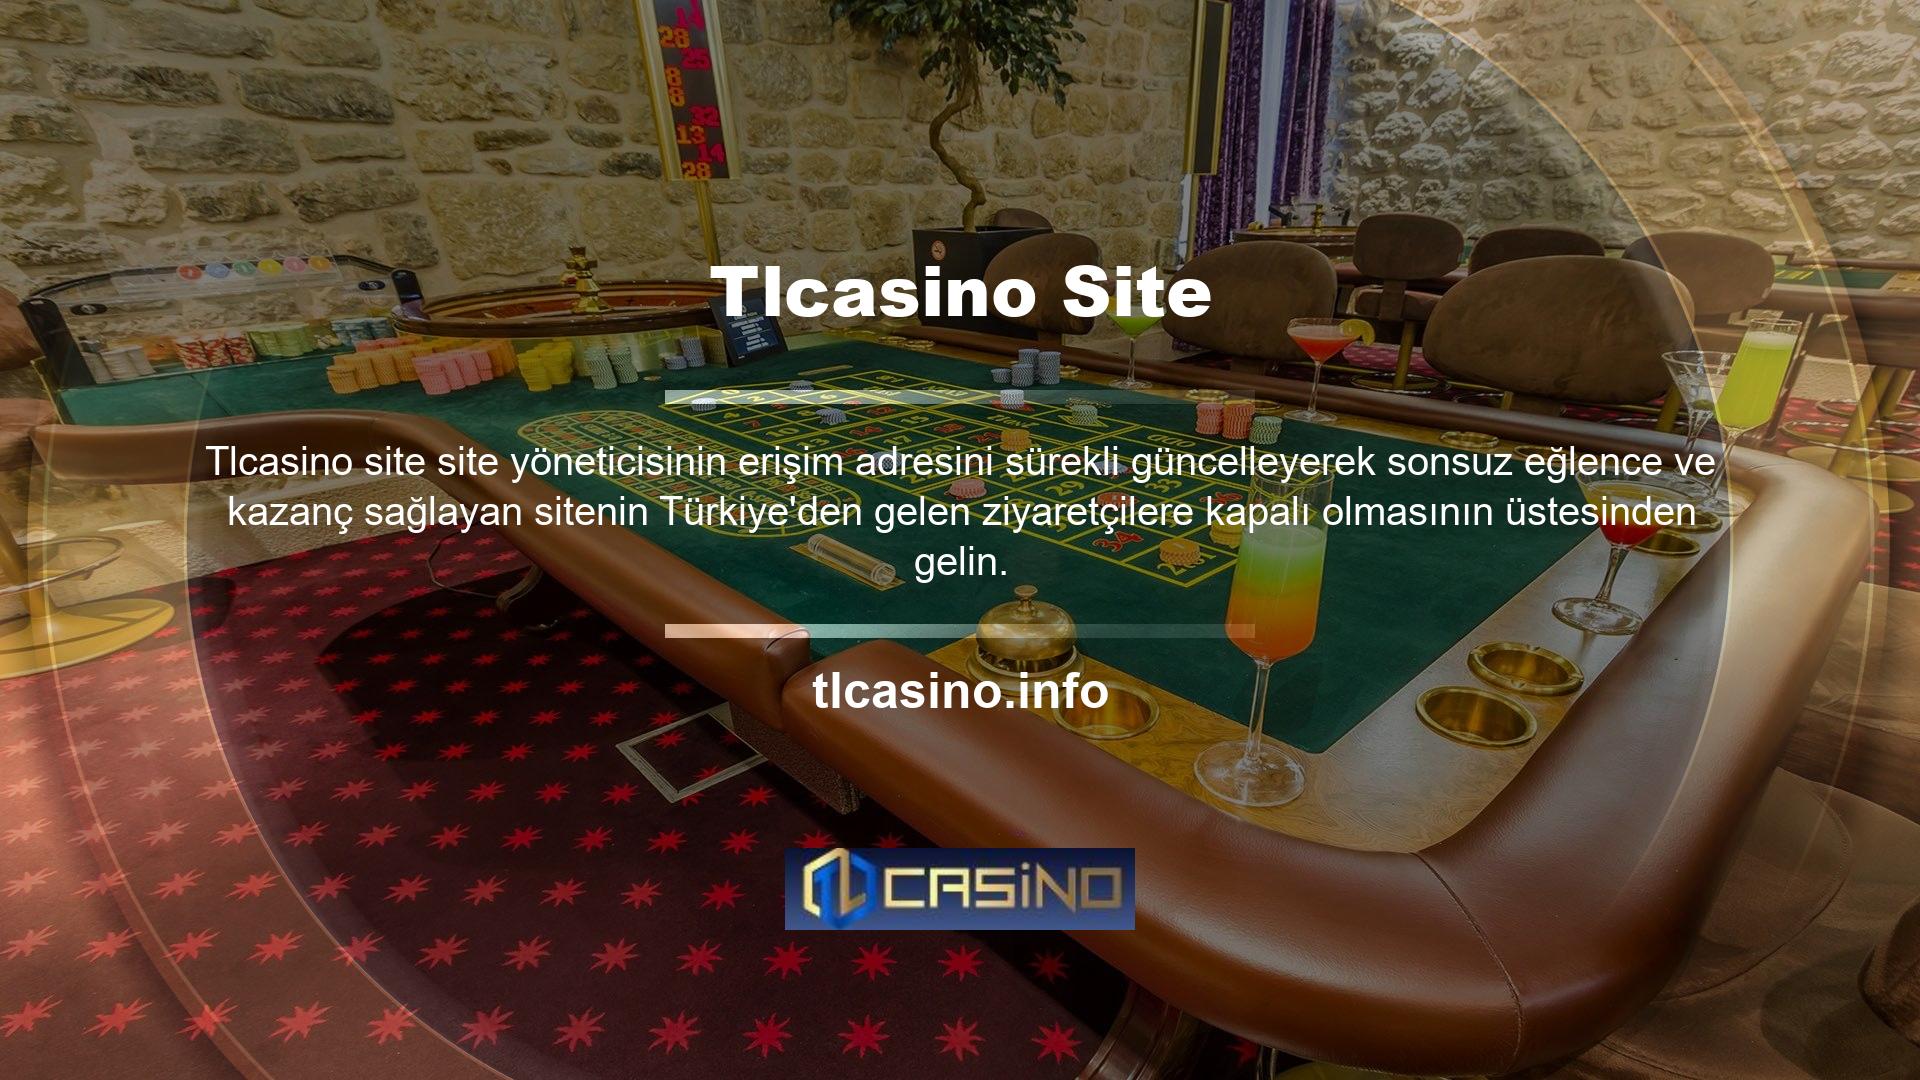 Yeni web sitesi adresi Tlcasino